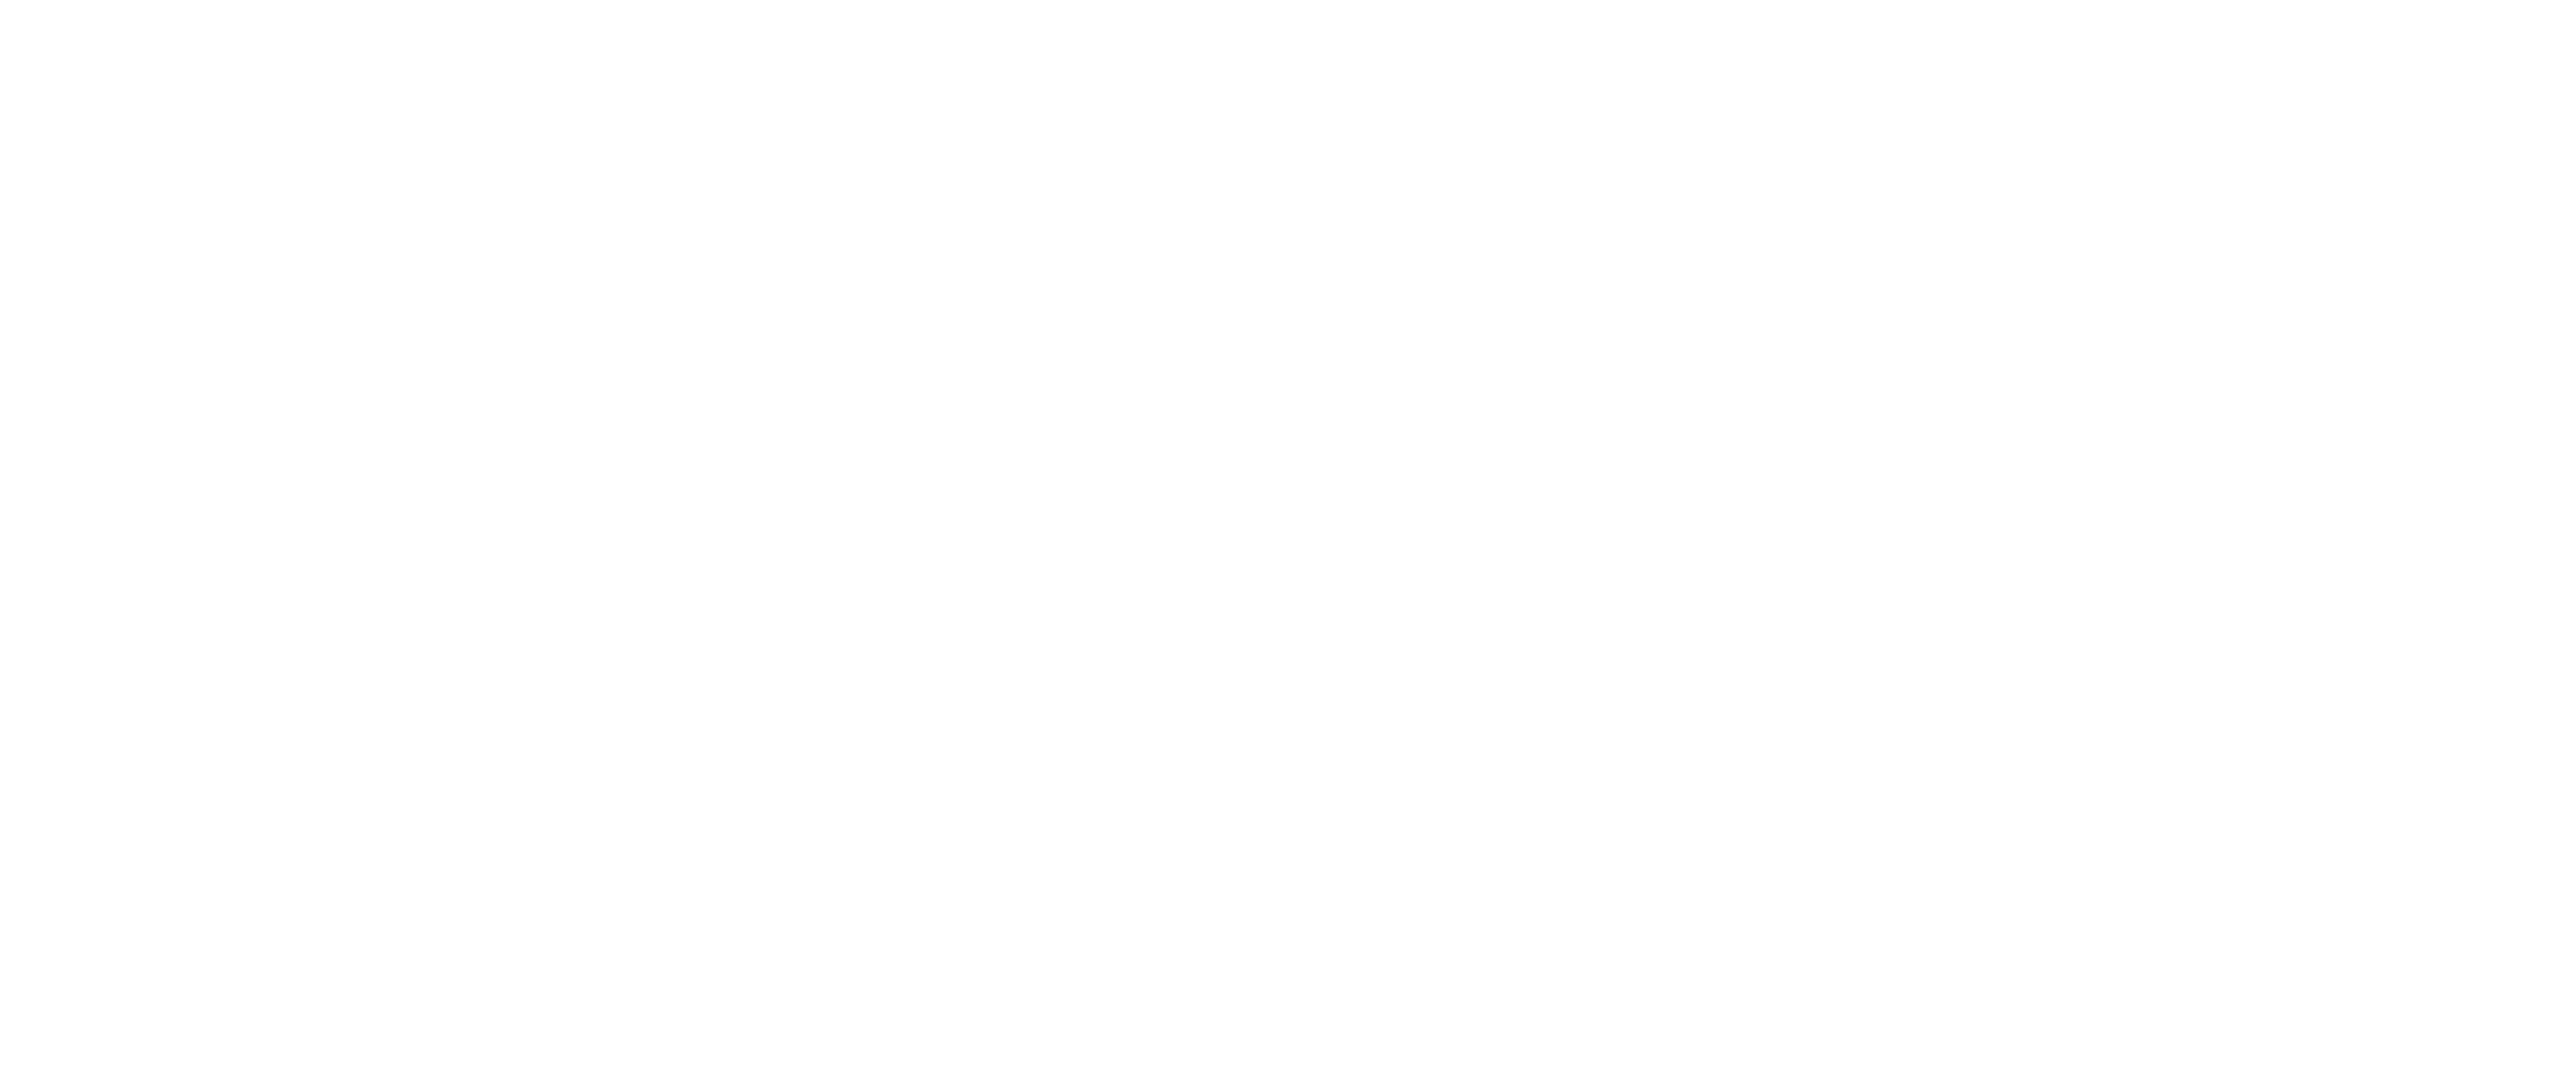 South Bank Secure Storage white logo